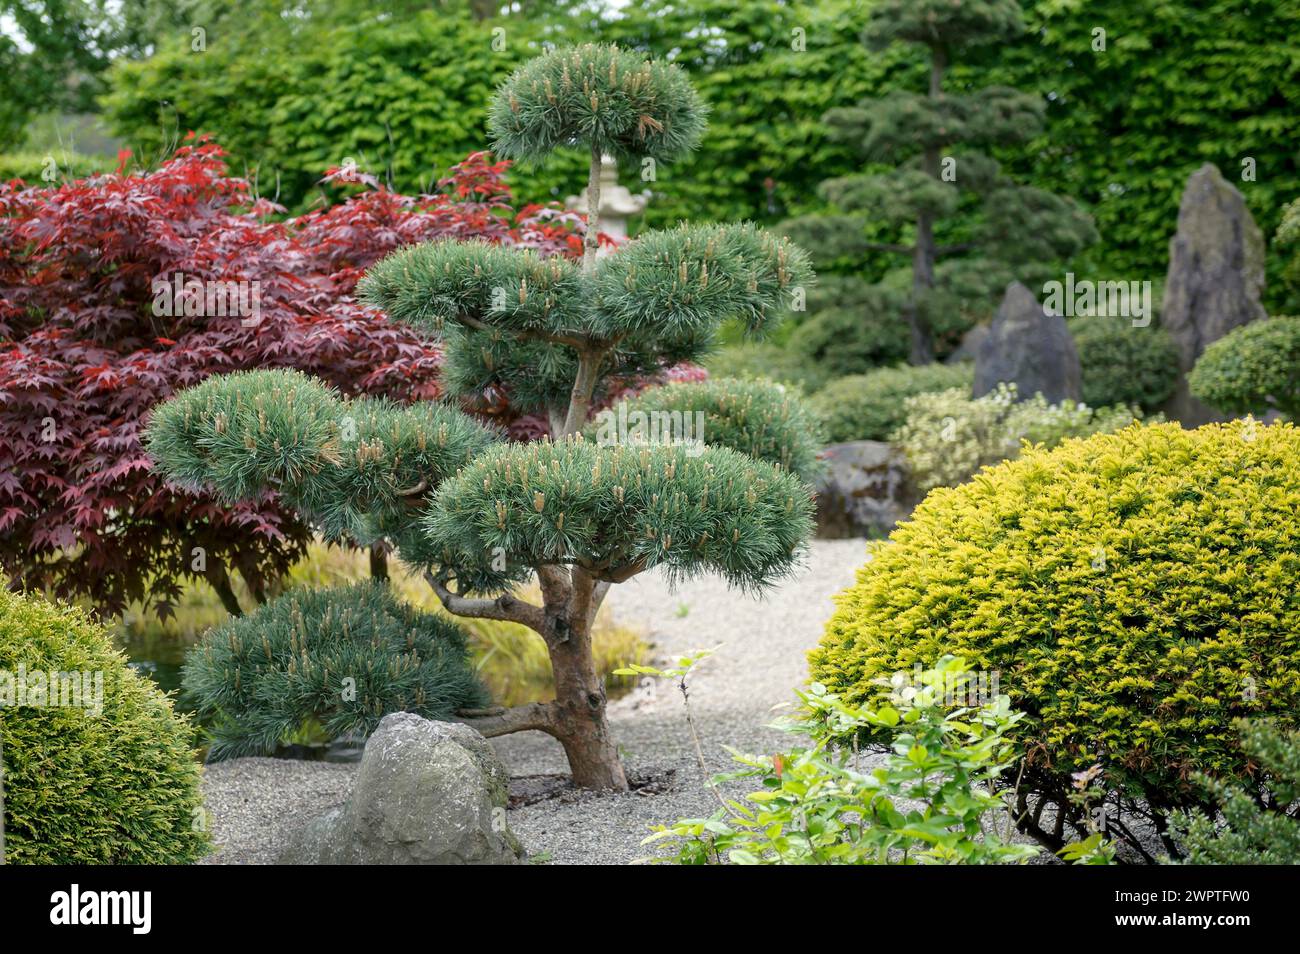 Japanese garden, Scots pine (Pinus sylvestris 'Glauca'), Park der Gaerten, Bad Zwischenahn, Lower Saxony, Germany Stock Photo